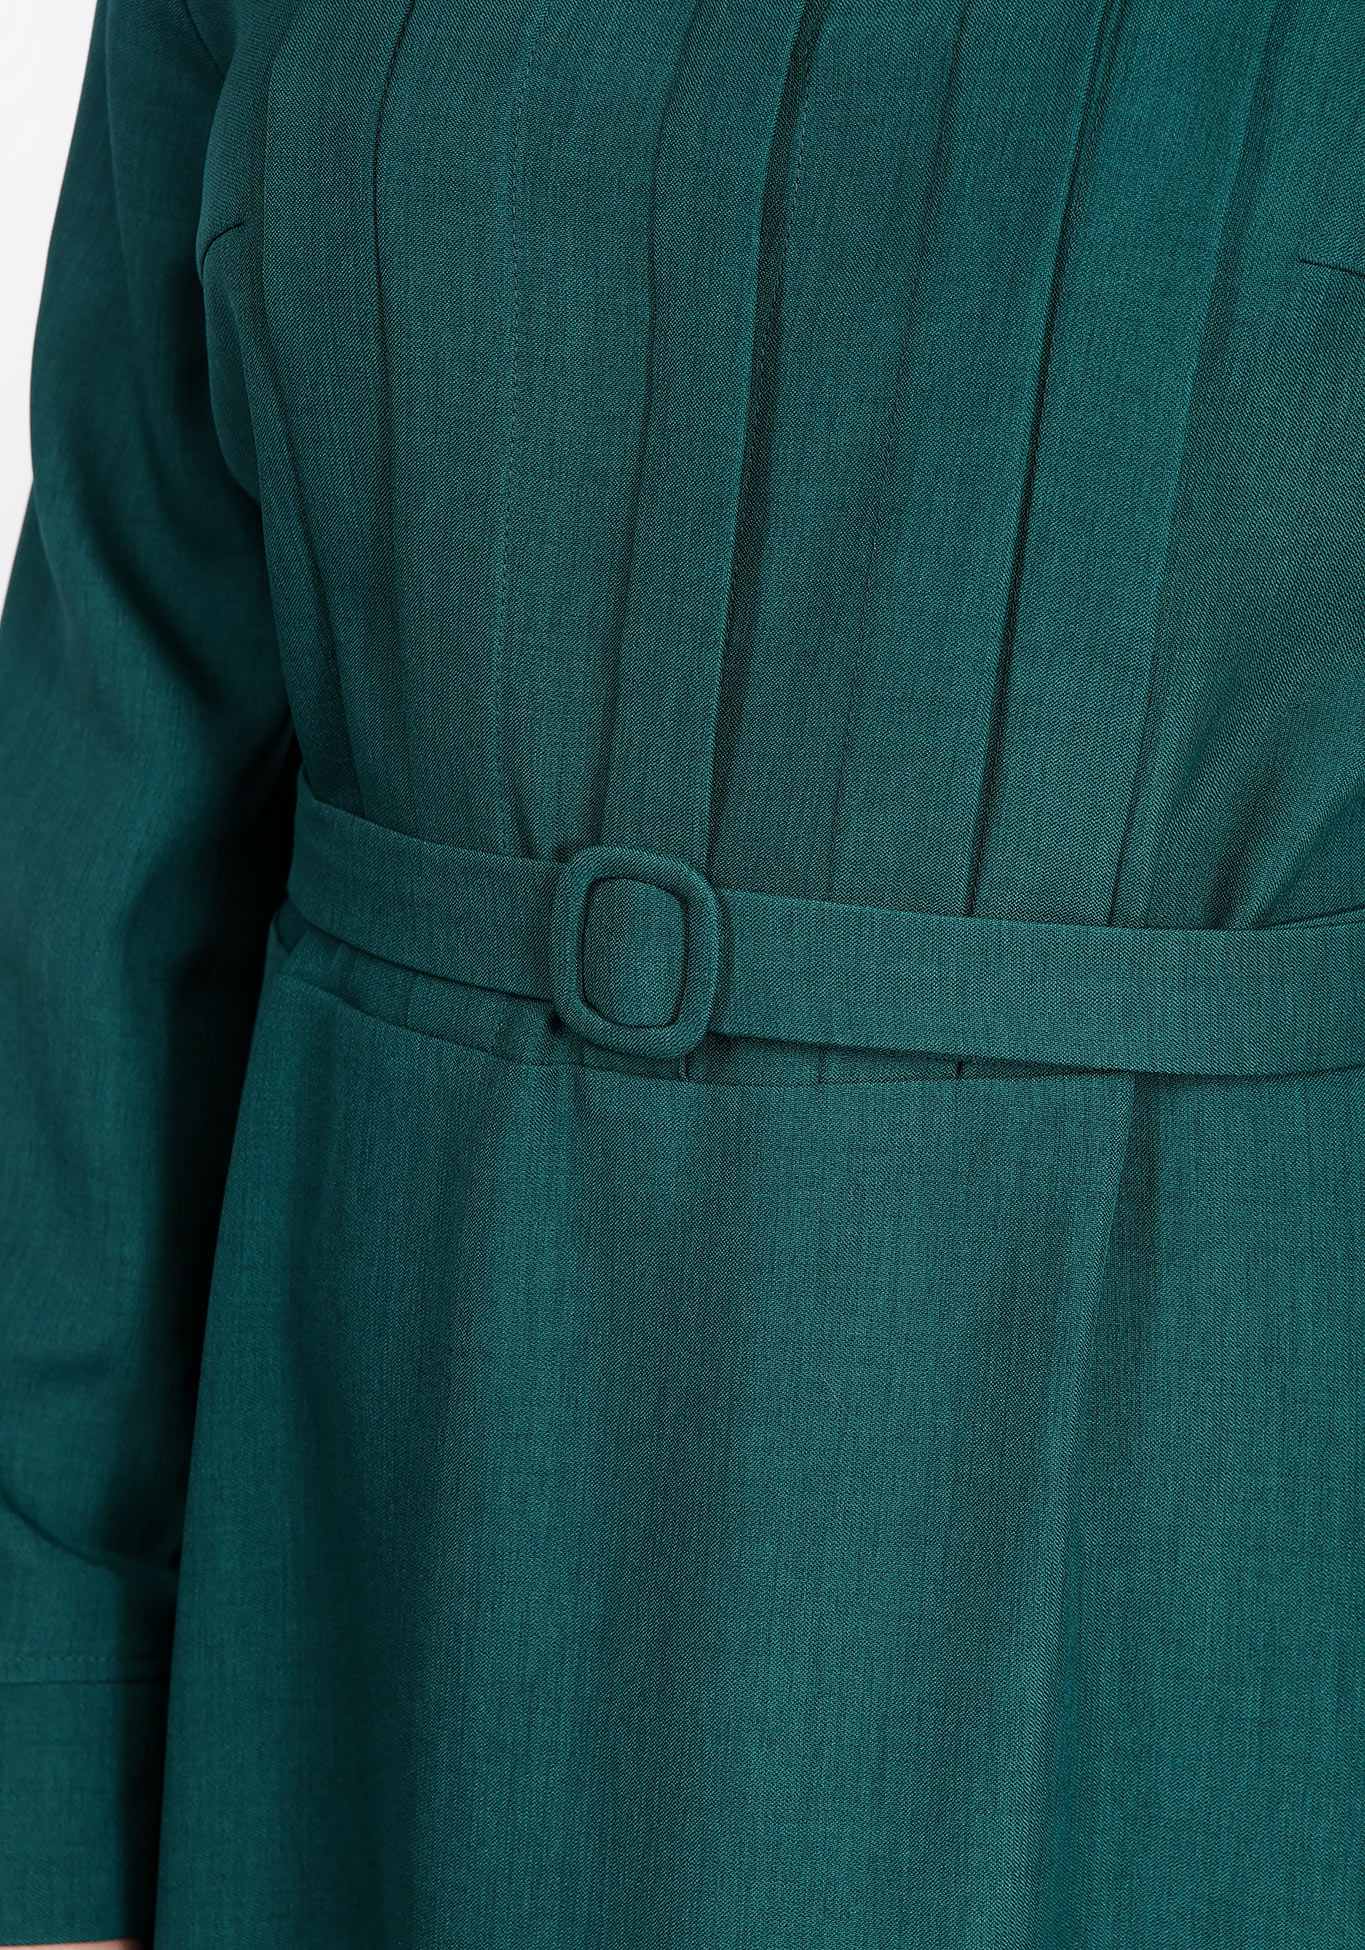 Платье с отложным воротником и поясом Elletto Life, размер 48, цвет зеленый - фото 4